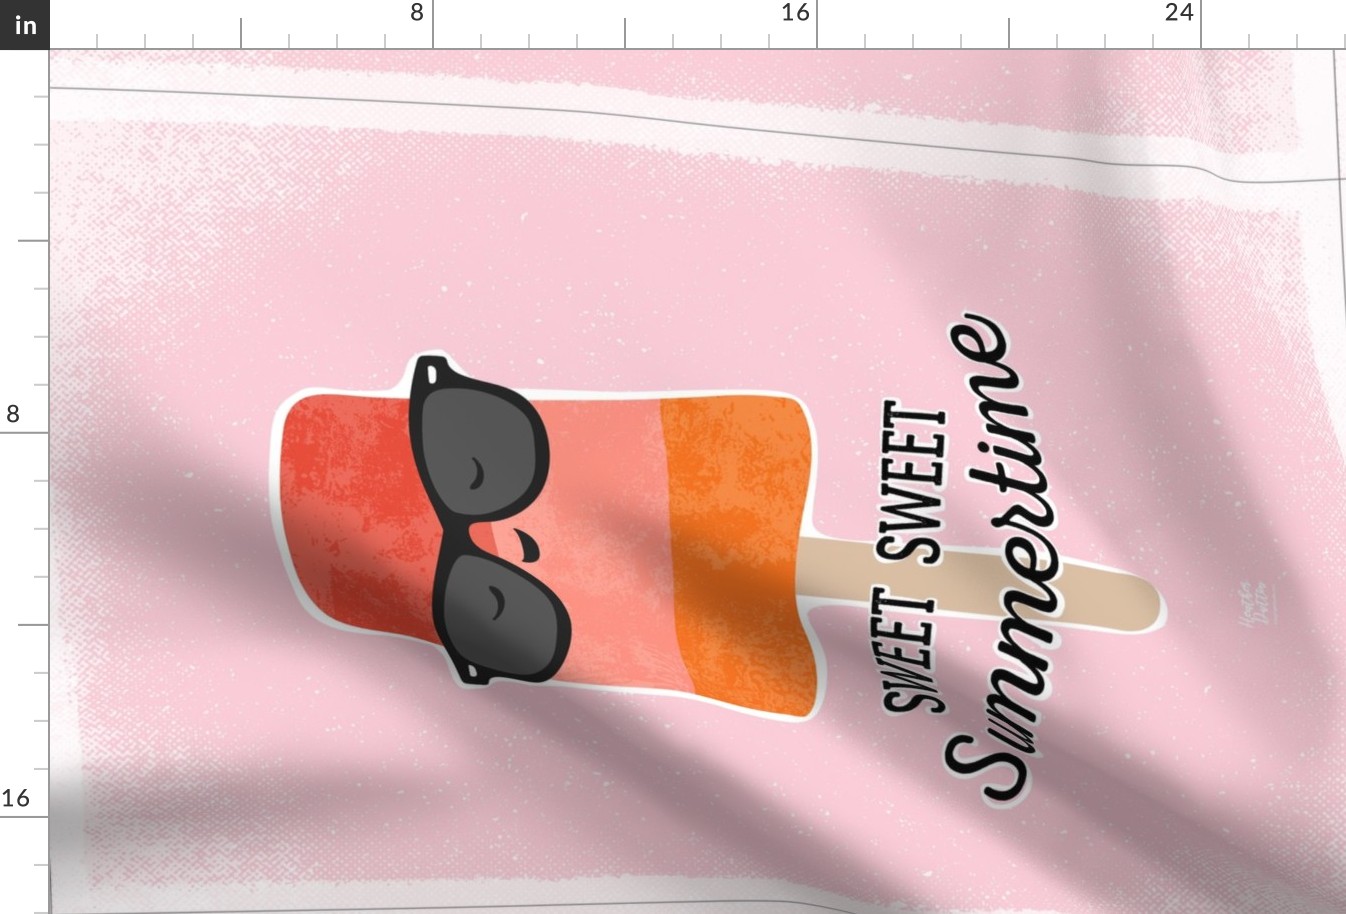 Sweet Sweet Summertime Popsicle Tea Towel - Pink